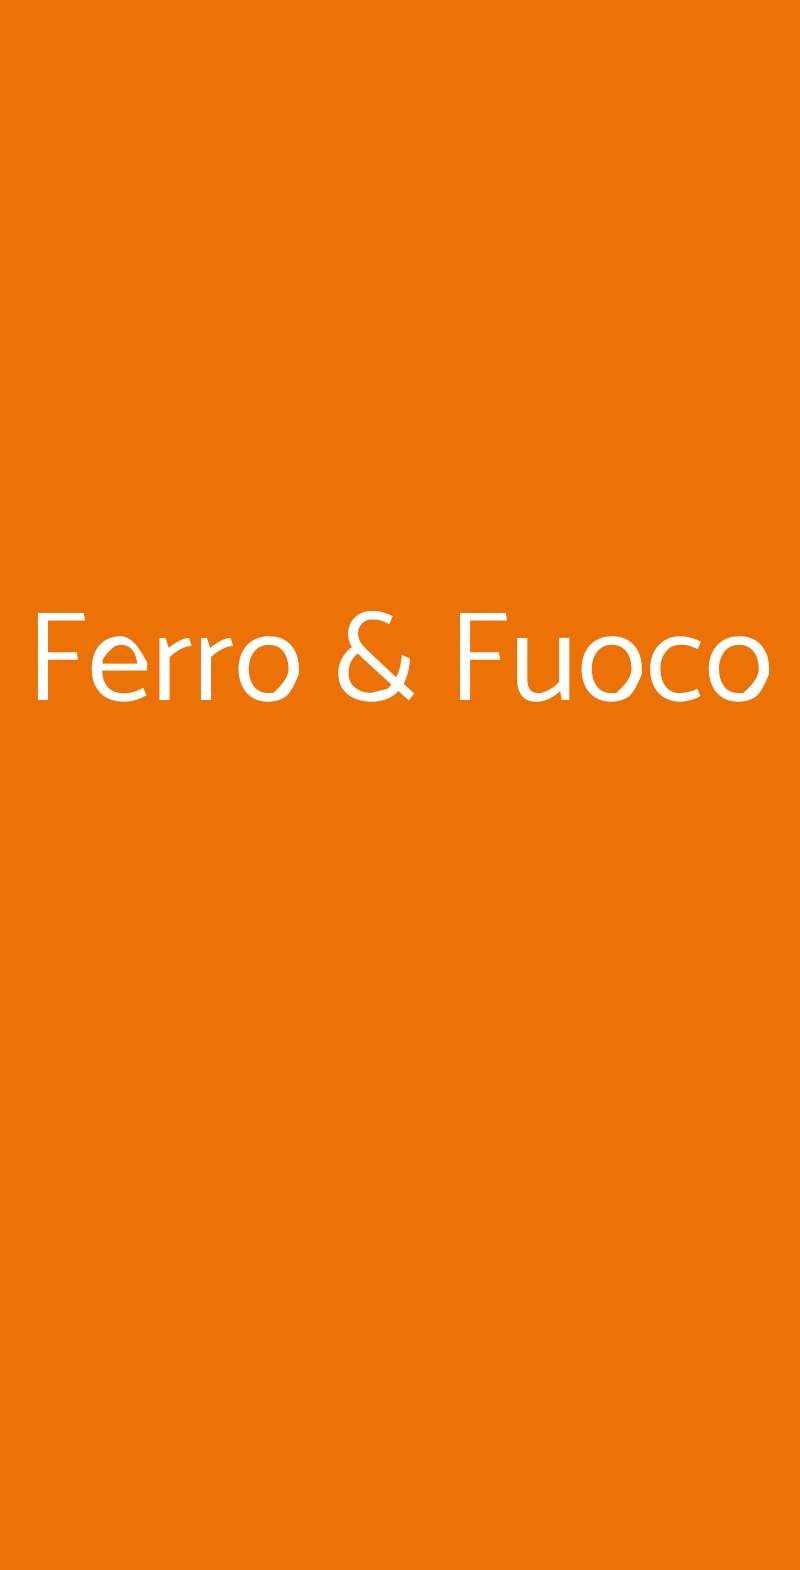 Ferro & Fuoco Genova menù 1 pagina